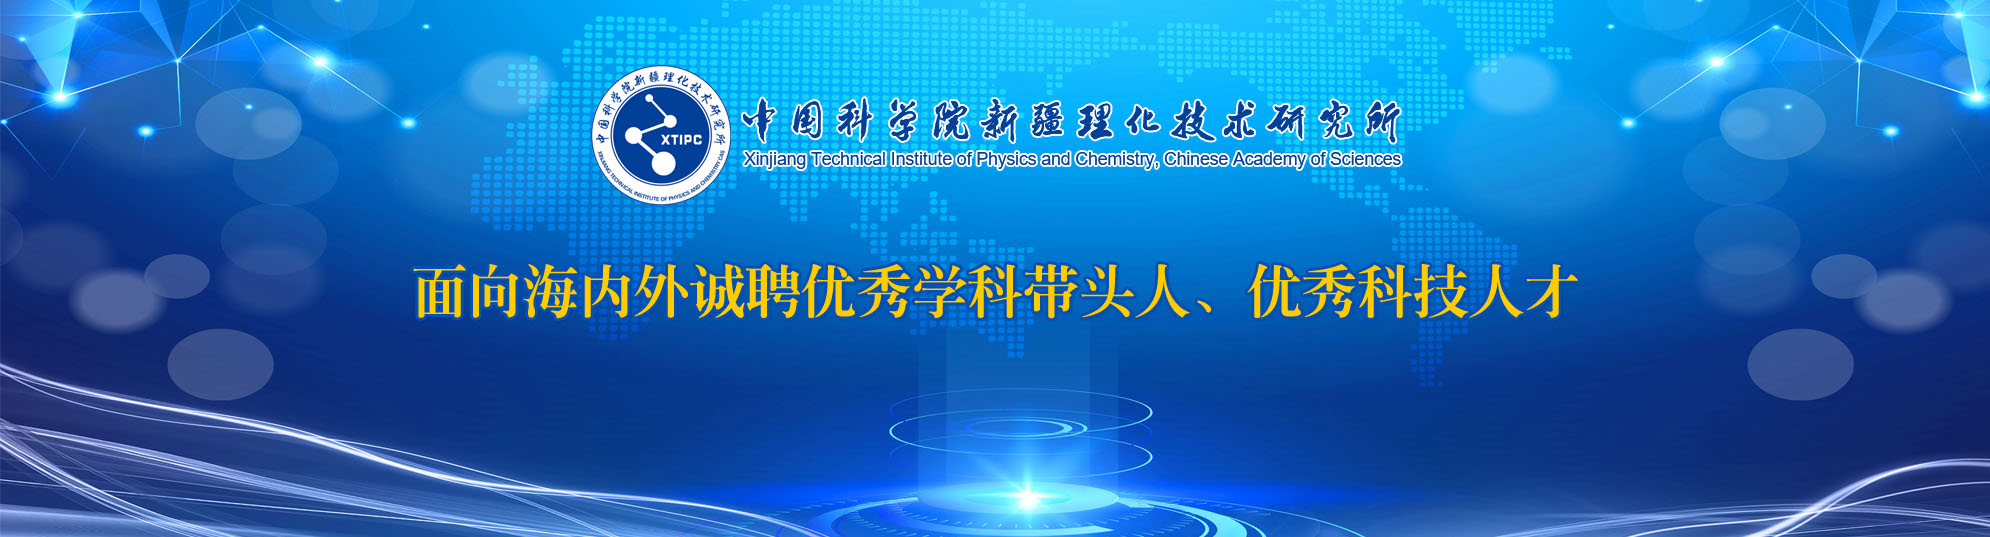 中国科学院新疆理化技术研究所2021年人才招聘启事